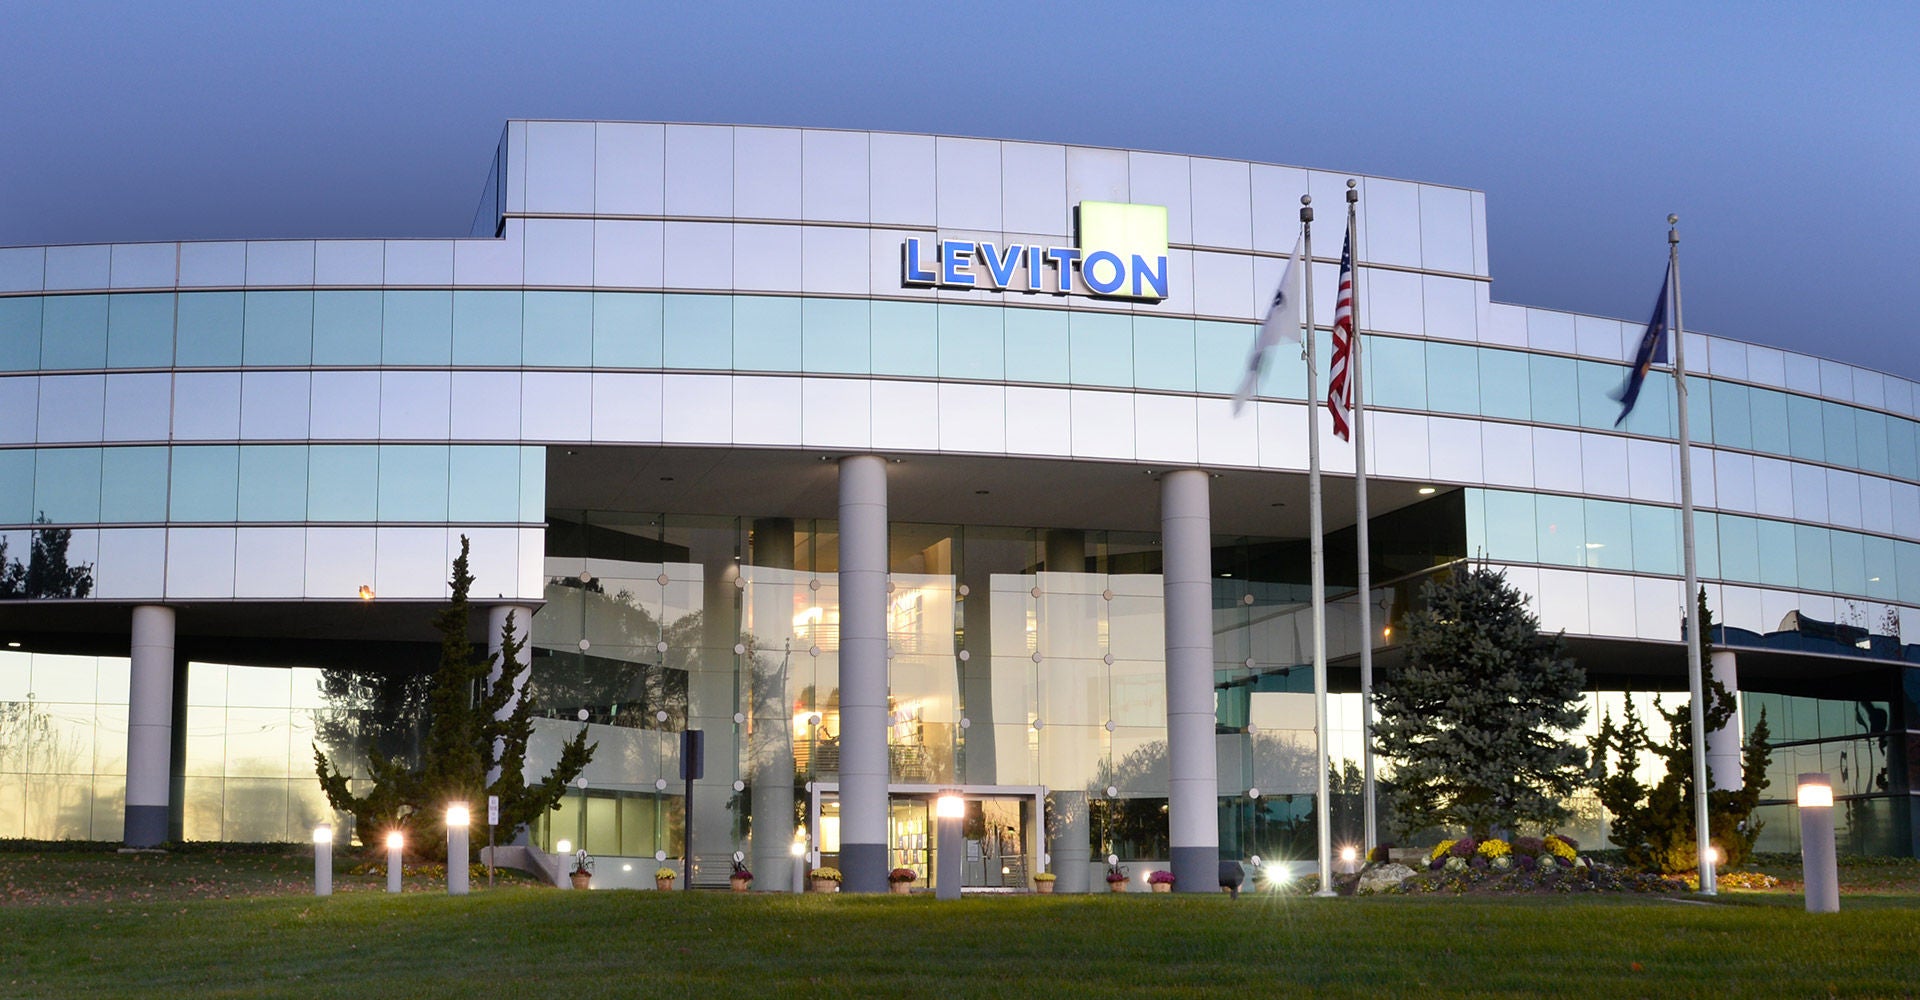 Leviton Headquarters